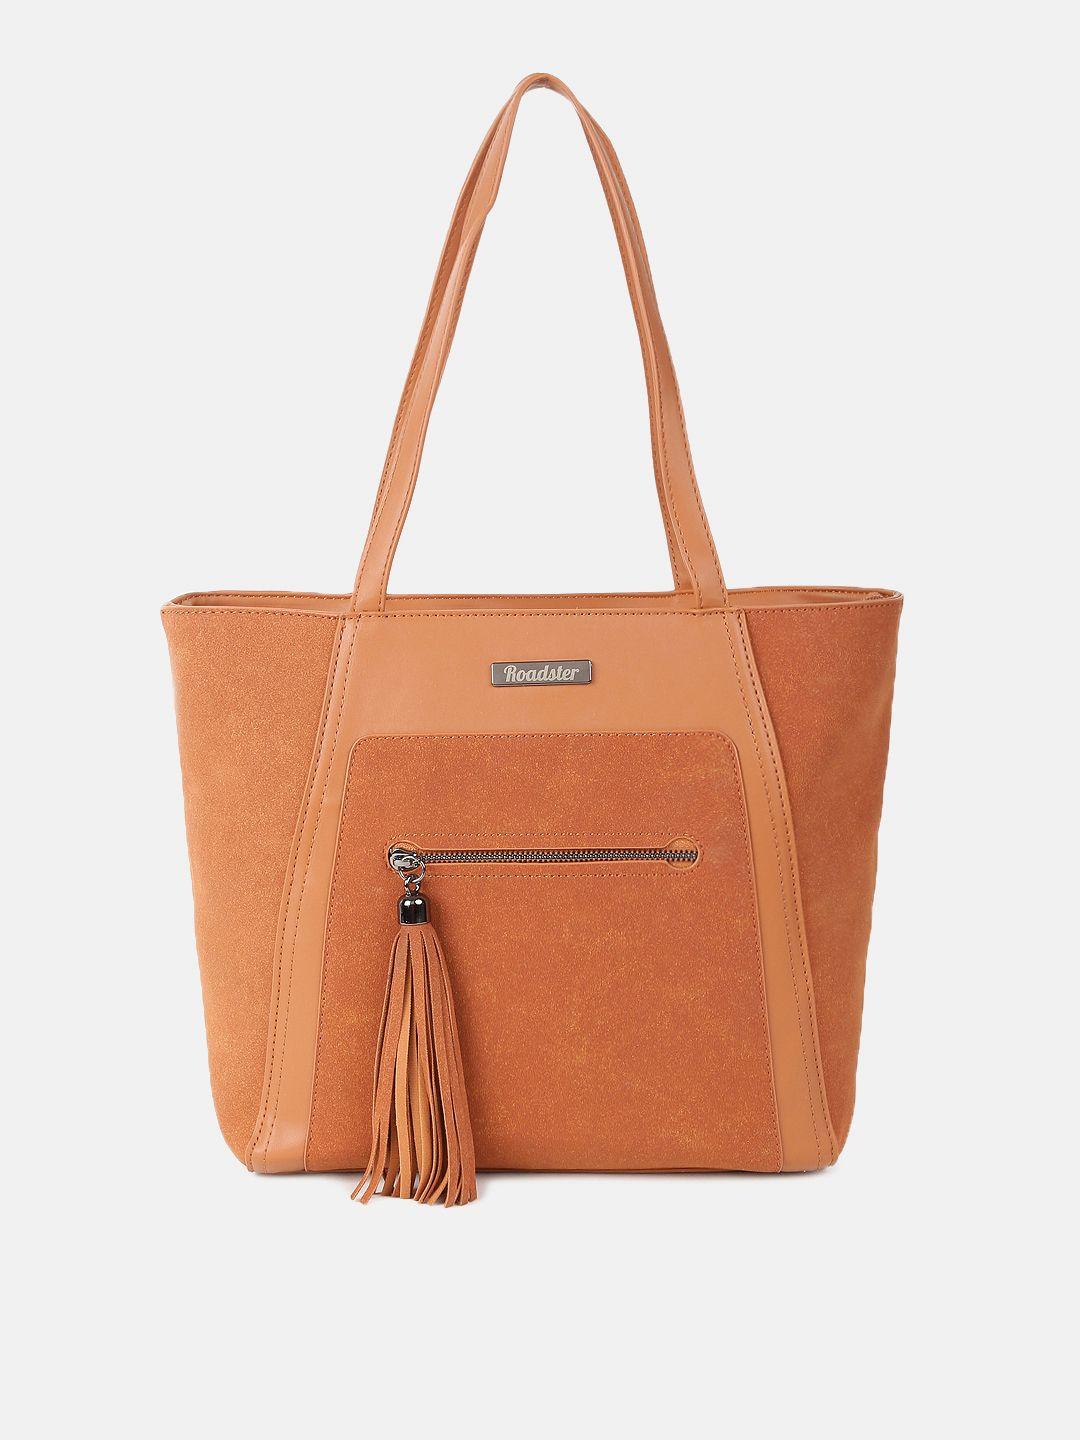 roadster tan brown structured shoulder bag